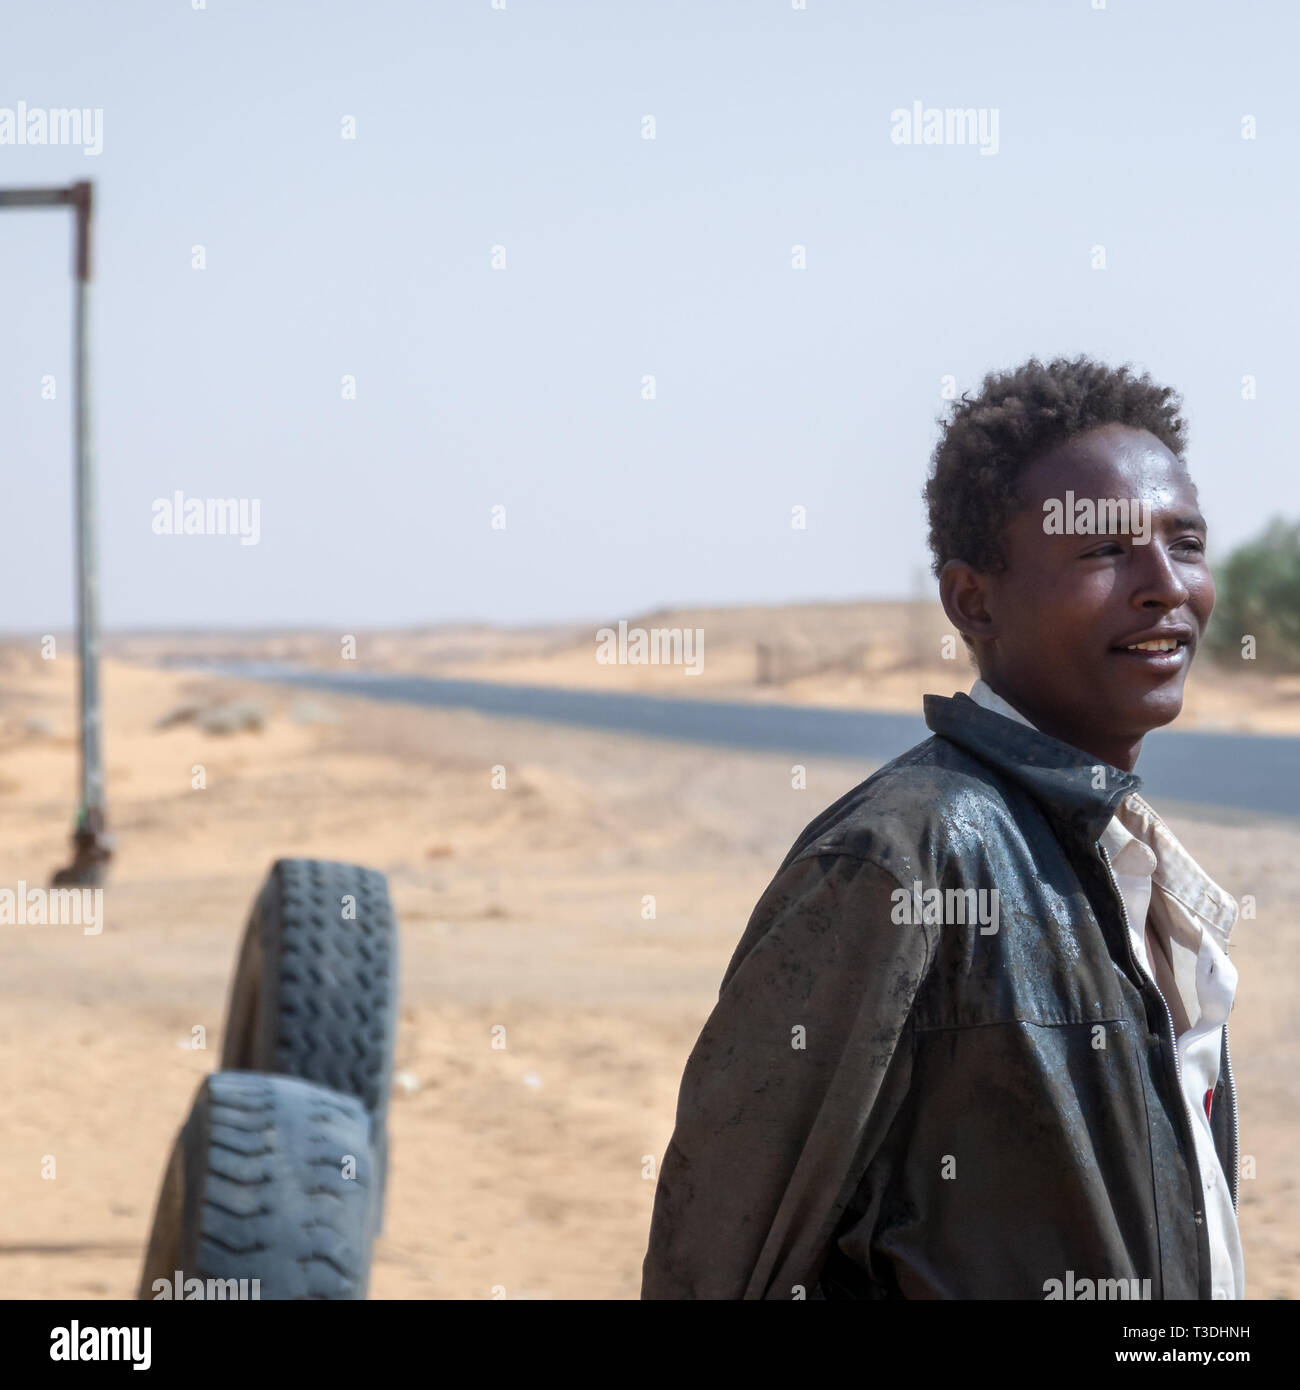 Kerma, au Soudan, le 8 février, 2019. : Jeune homme souriant soudanais en portrait sur la route à travers le désert dans le nord du Soudan avec de vieux cuir usé jmd Banque D'Images